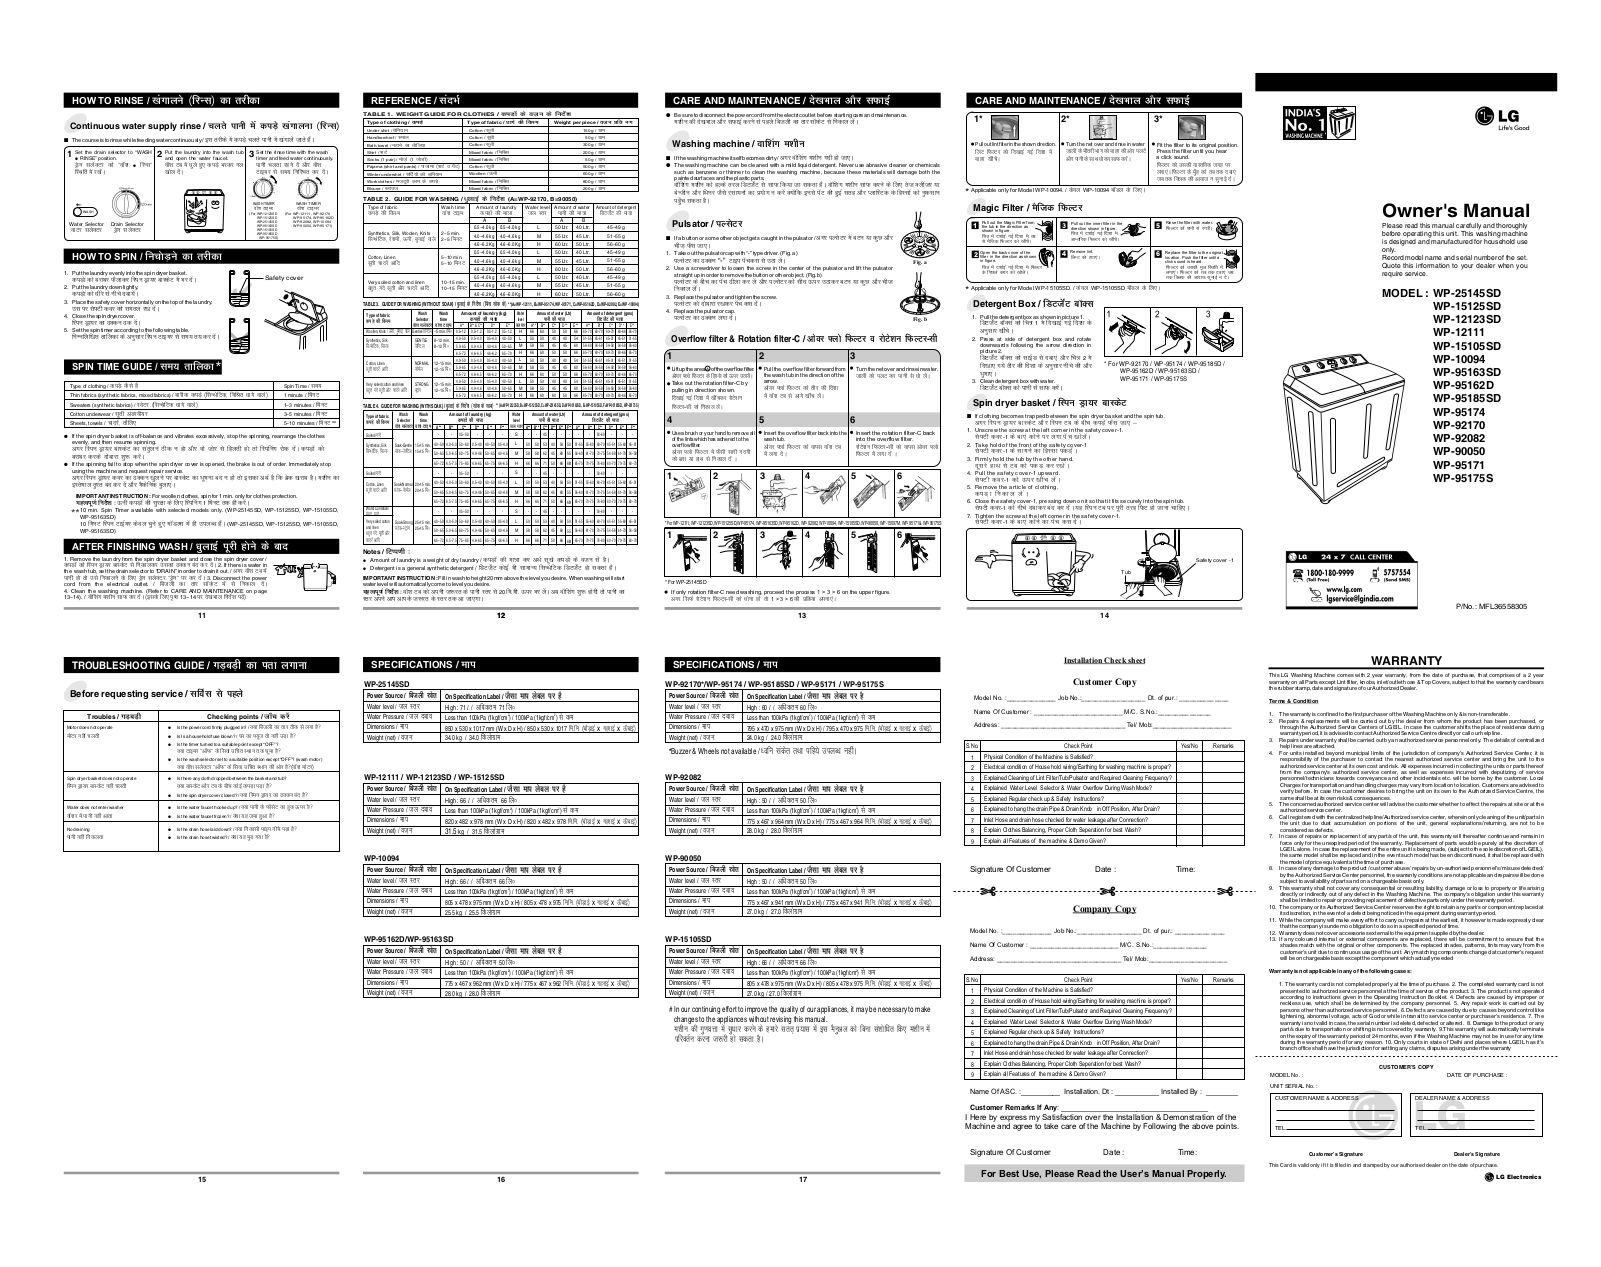 LG WP-10094, WP-95185SD, WP-95162D, WP-92170 Owner’s Manual